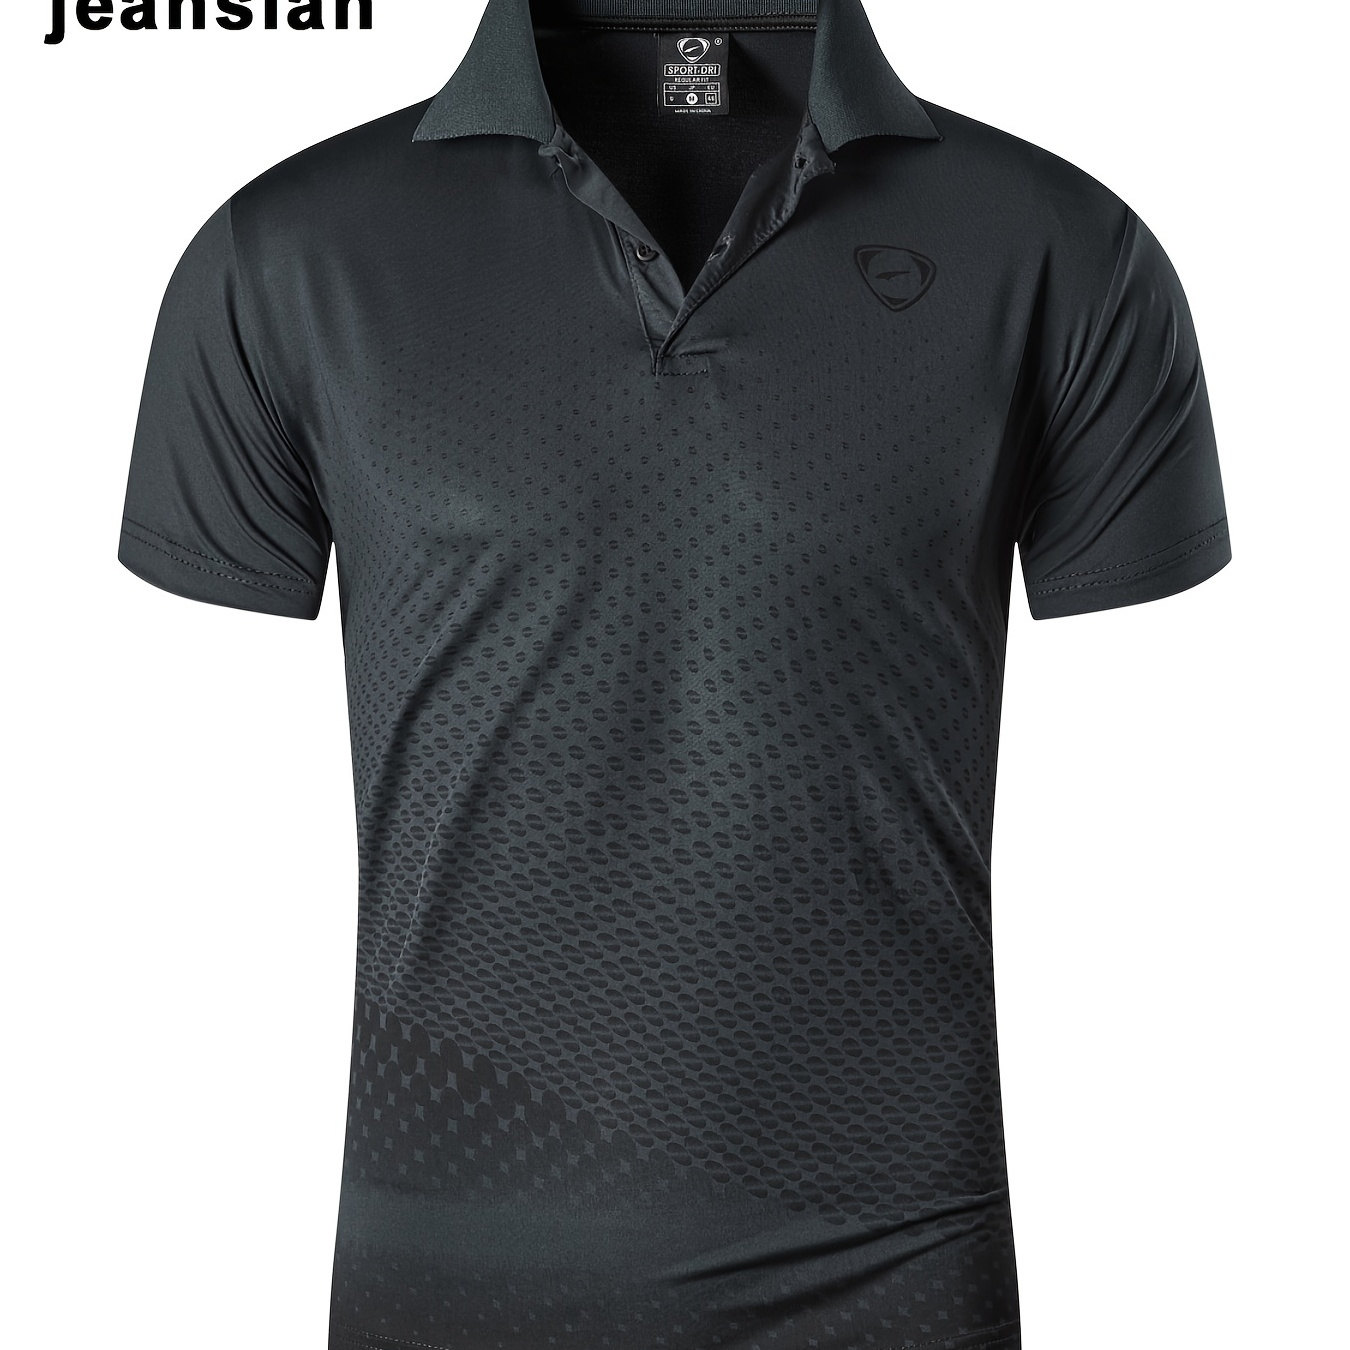 

Jeansian Men's Sport Shirt, Short Sleeve T-shirt For Tennis Golf Bowling